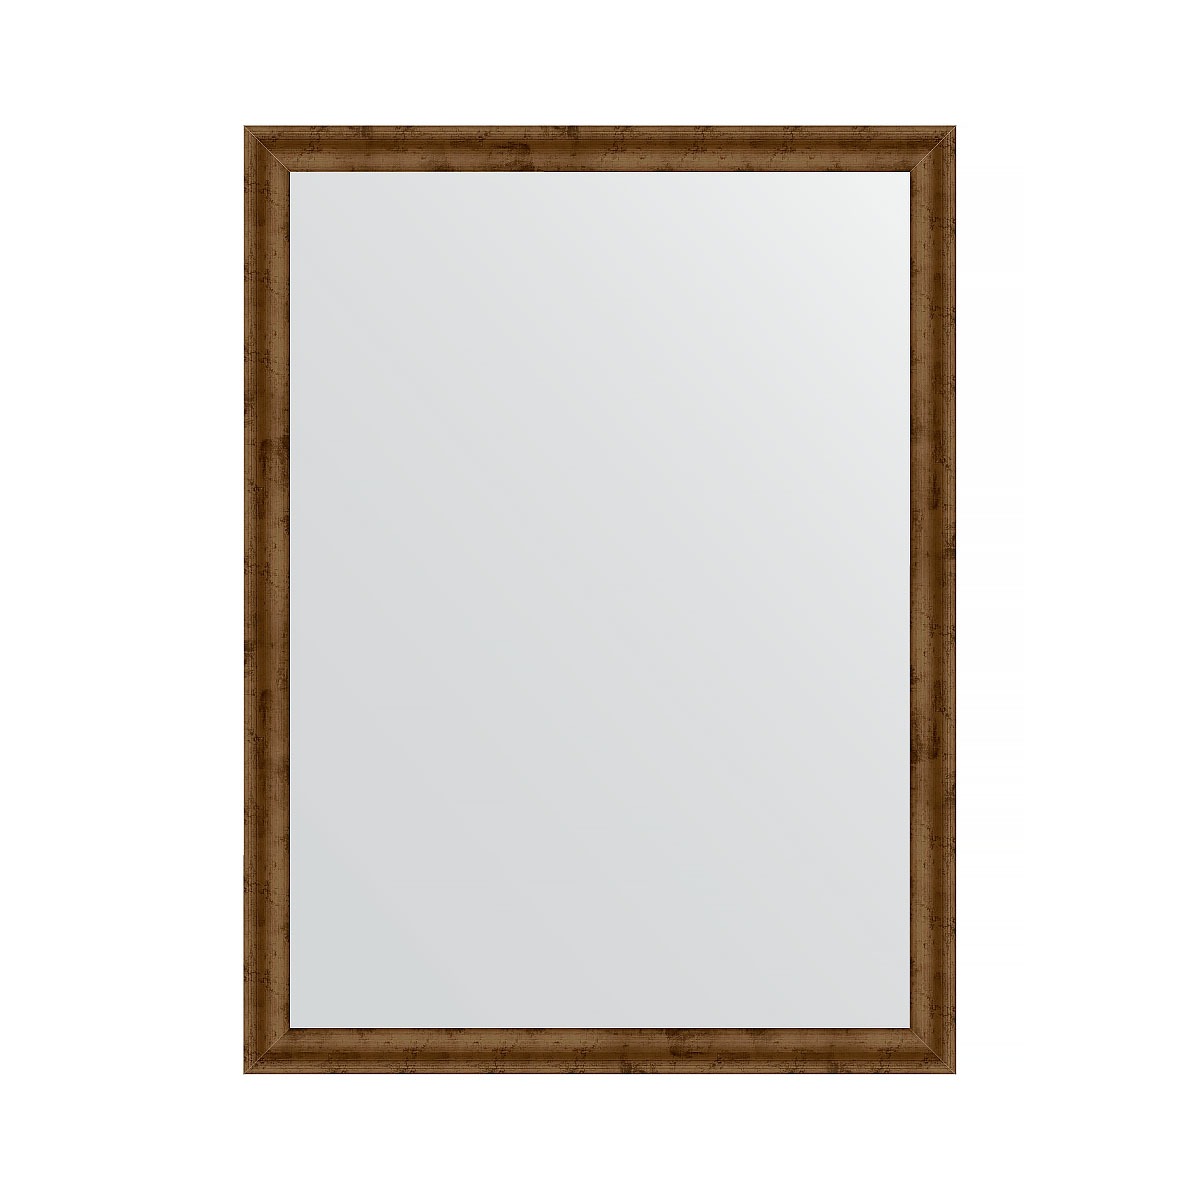 Зеркало в багетной раме Evoform красная бронза 37 мм 60х80 см зеркало evoform в багетной раме 57х107см bx 0728